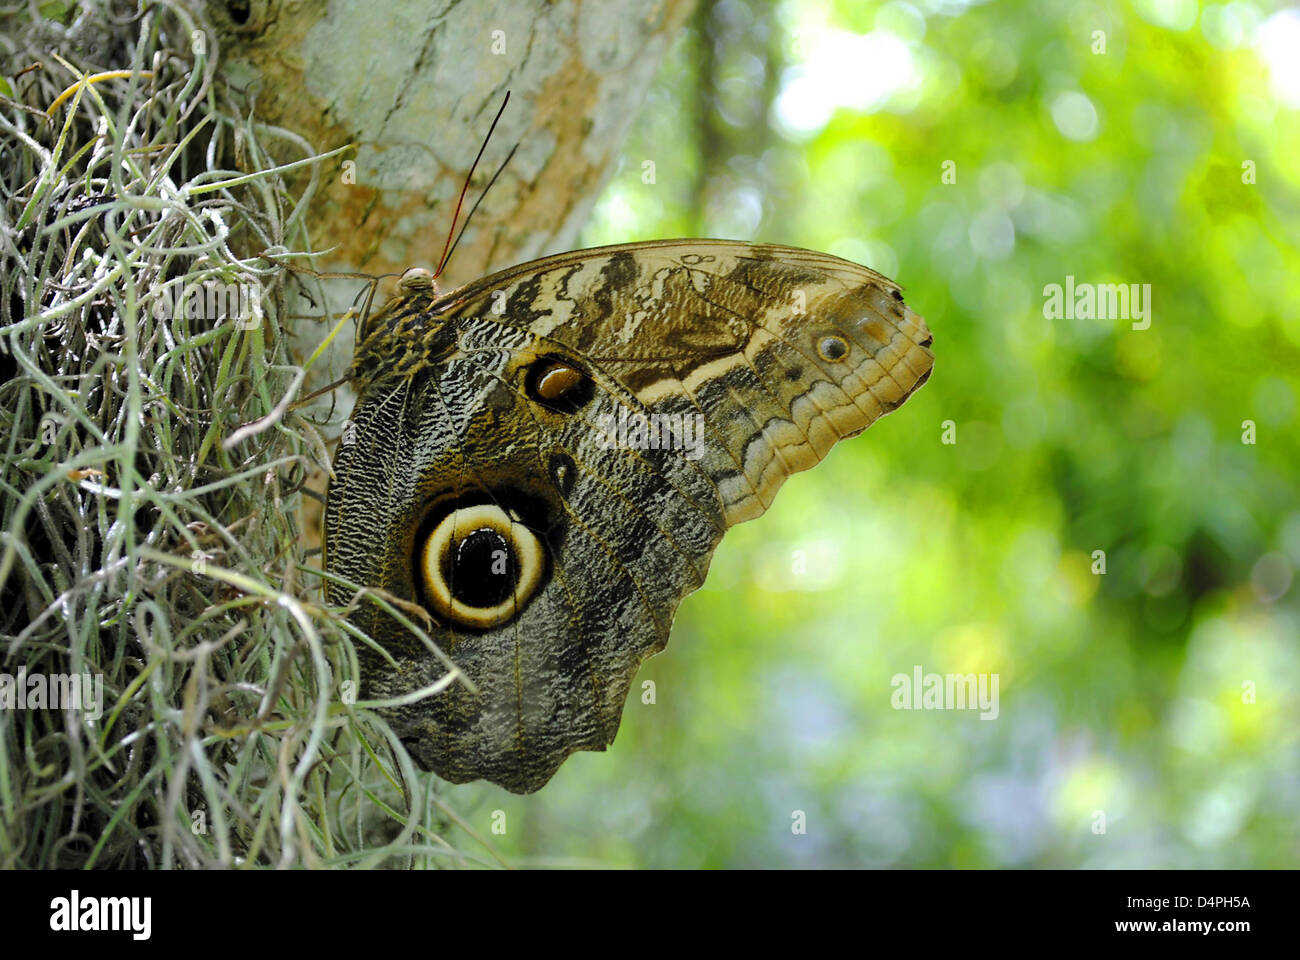 Owl butterfly Latin name Calligo illlioneus Stock Photo